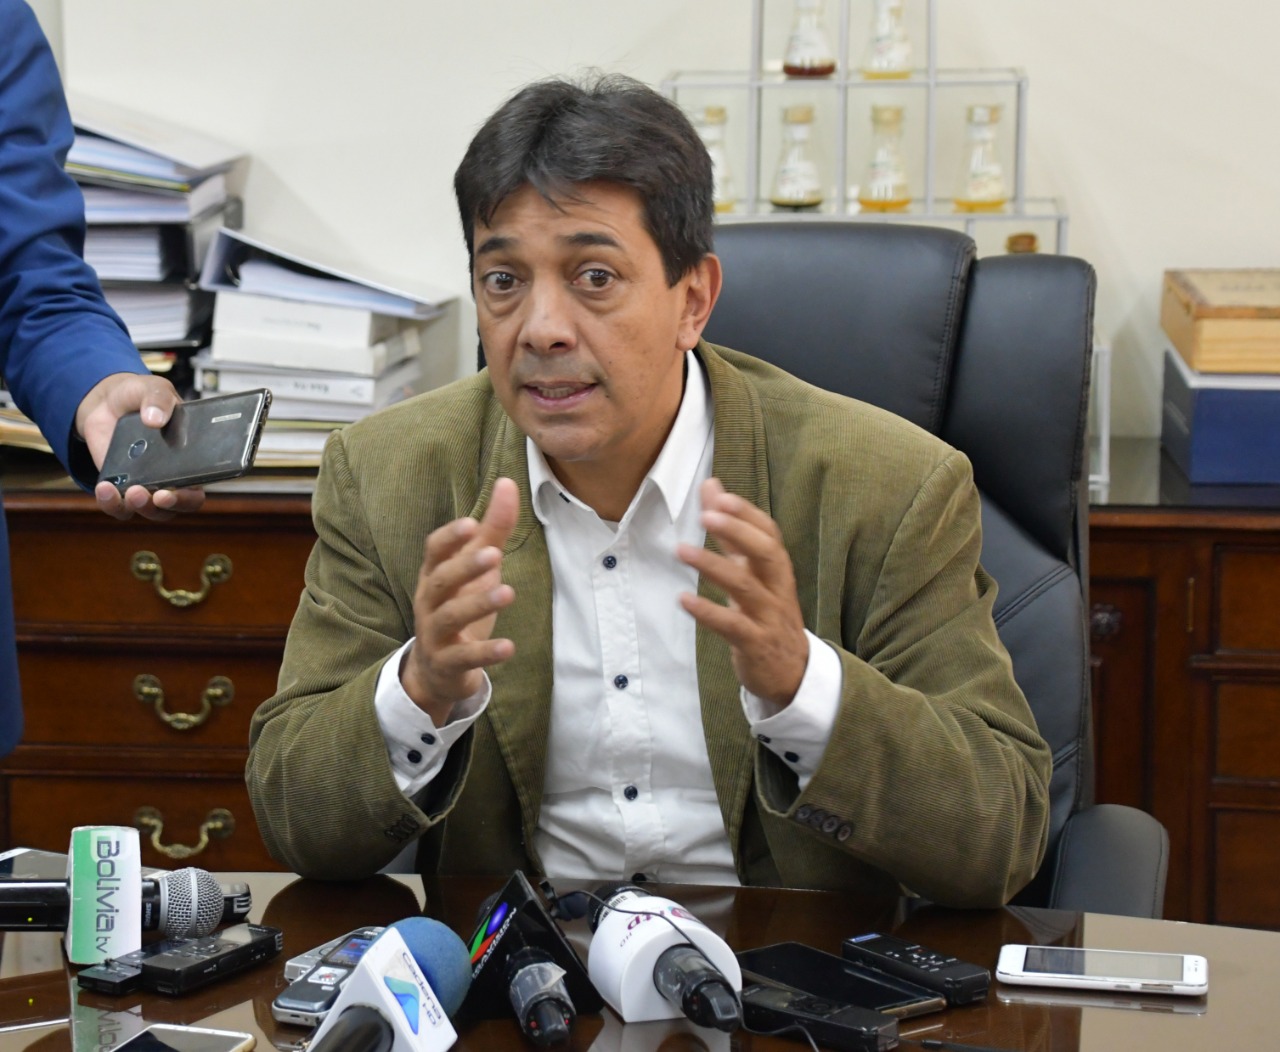 El Ministro de Hidrocarburos asegura que la distribución de diésel se normaliza